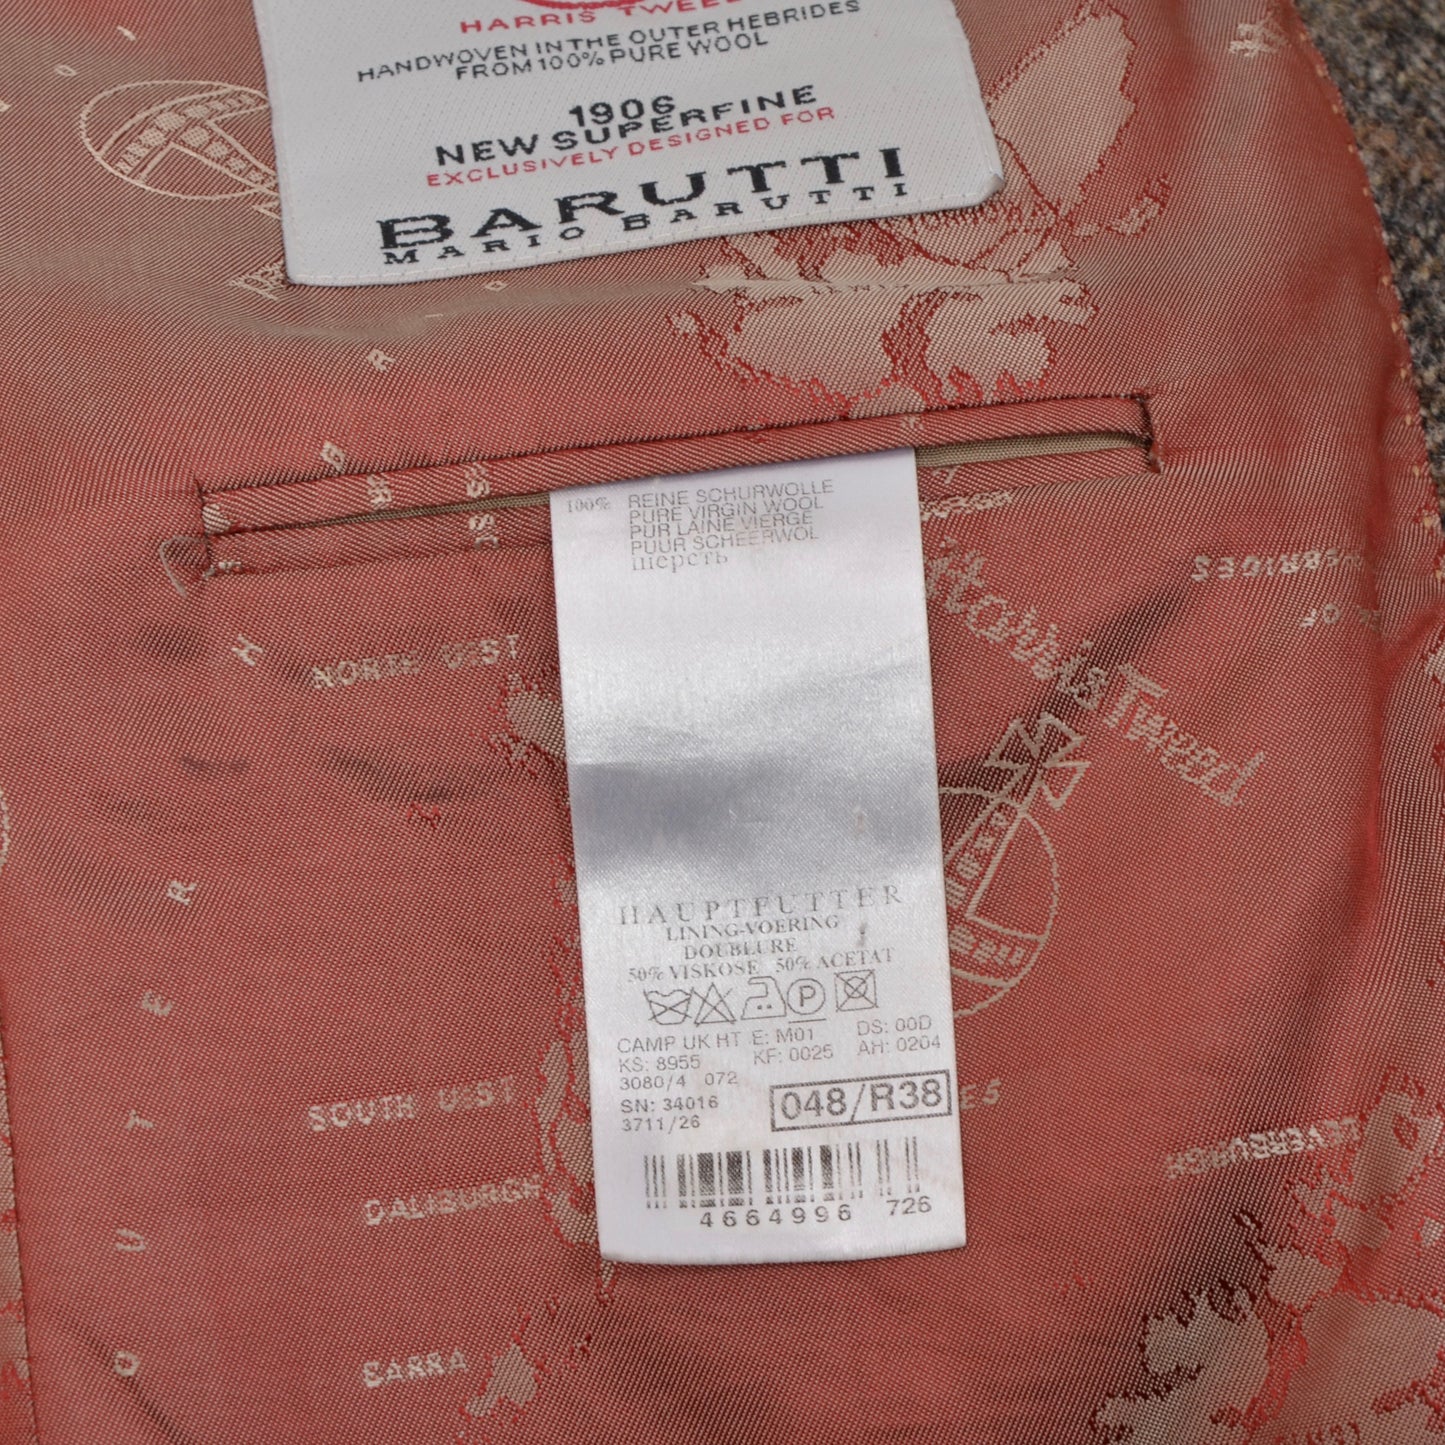 Jacke aus Harris-Tweed/Barutti-Wolle, Größe 48/38R, braune Fensterscheibe